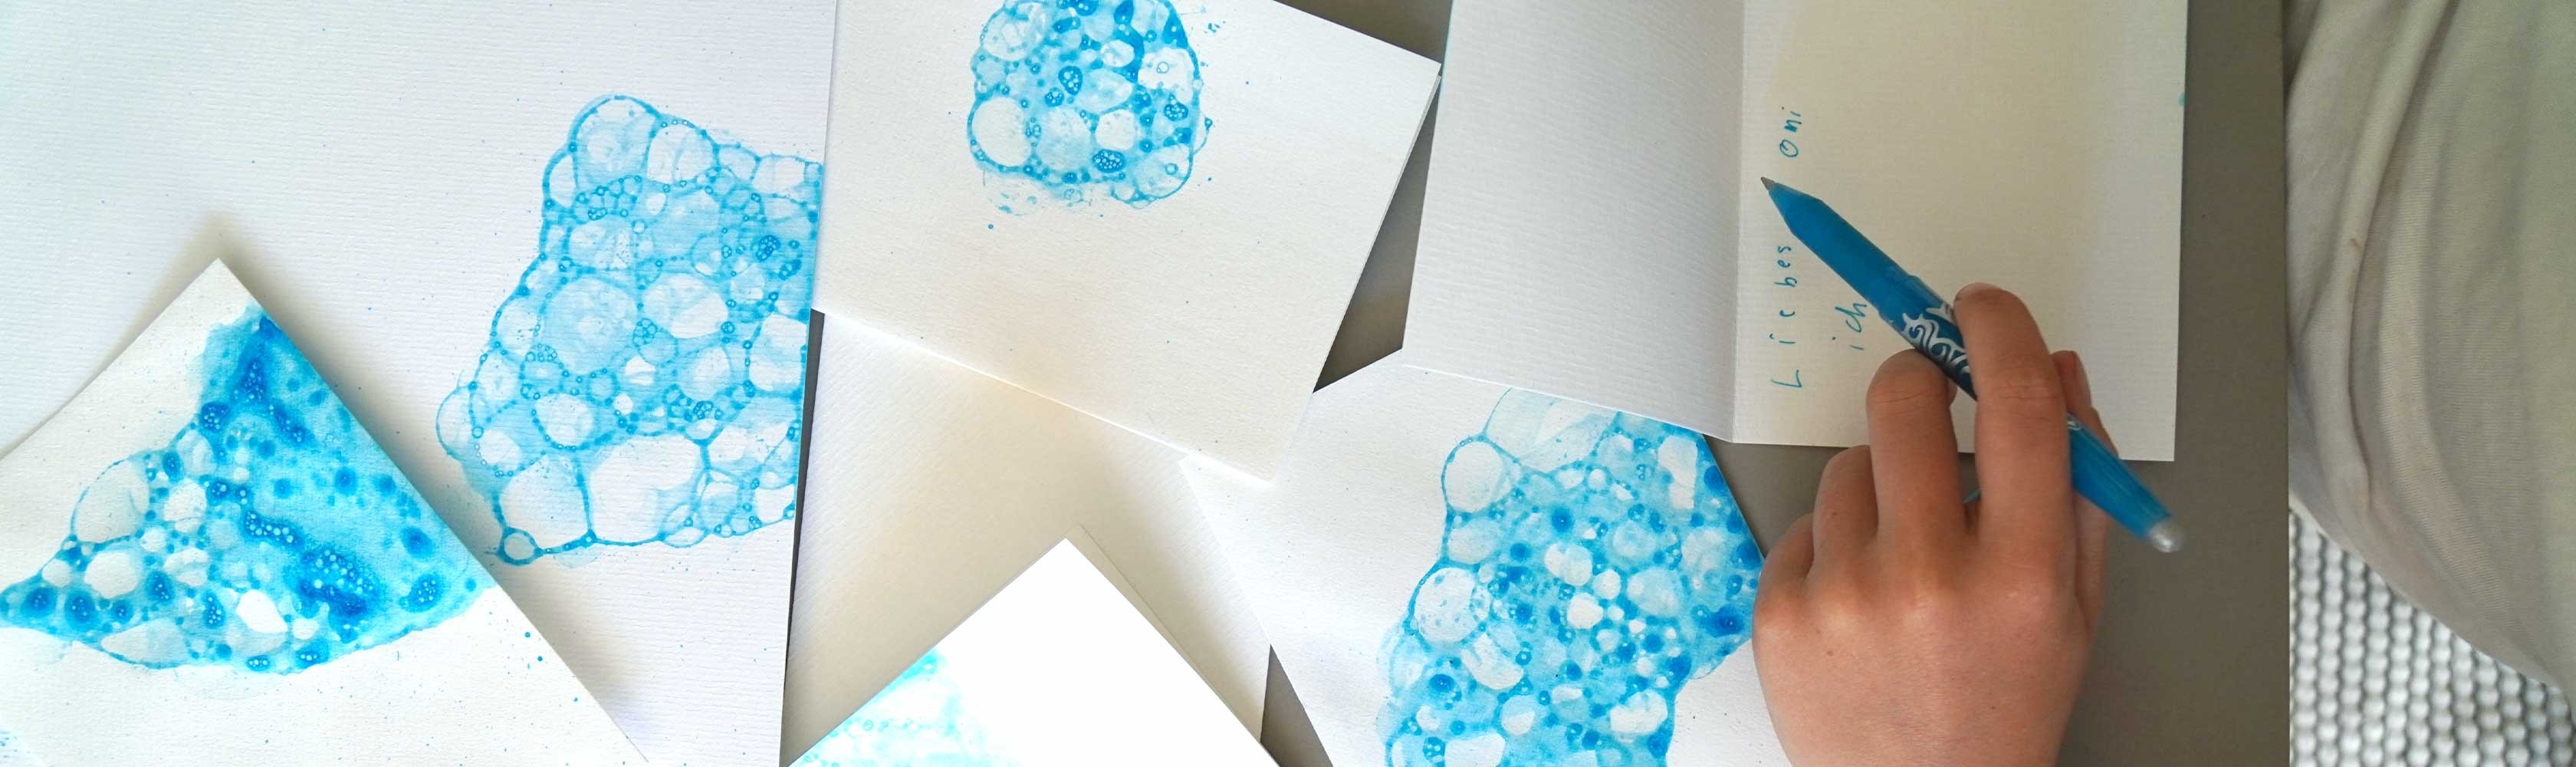 Colorare la carta con le bolle di sapone